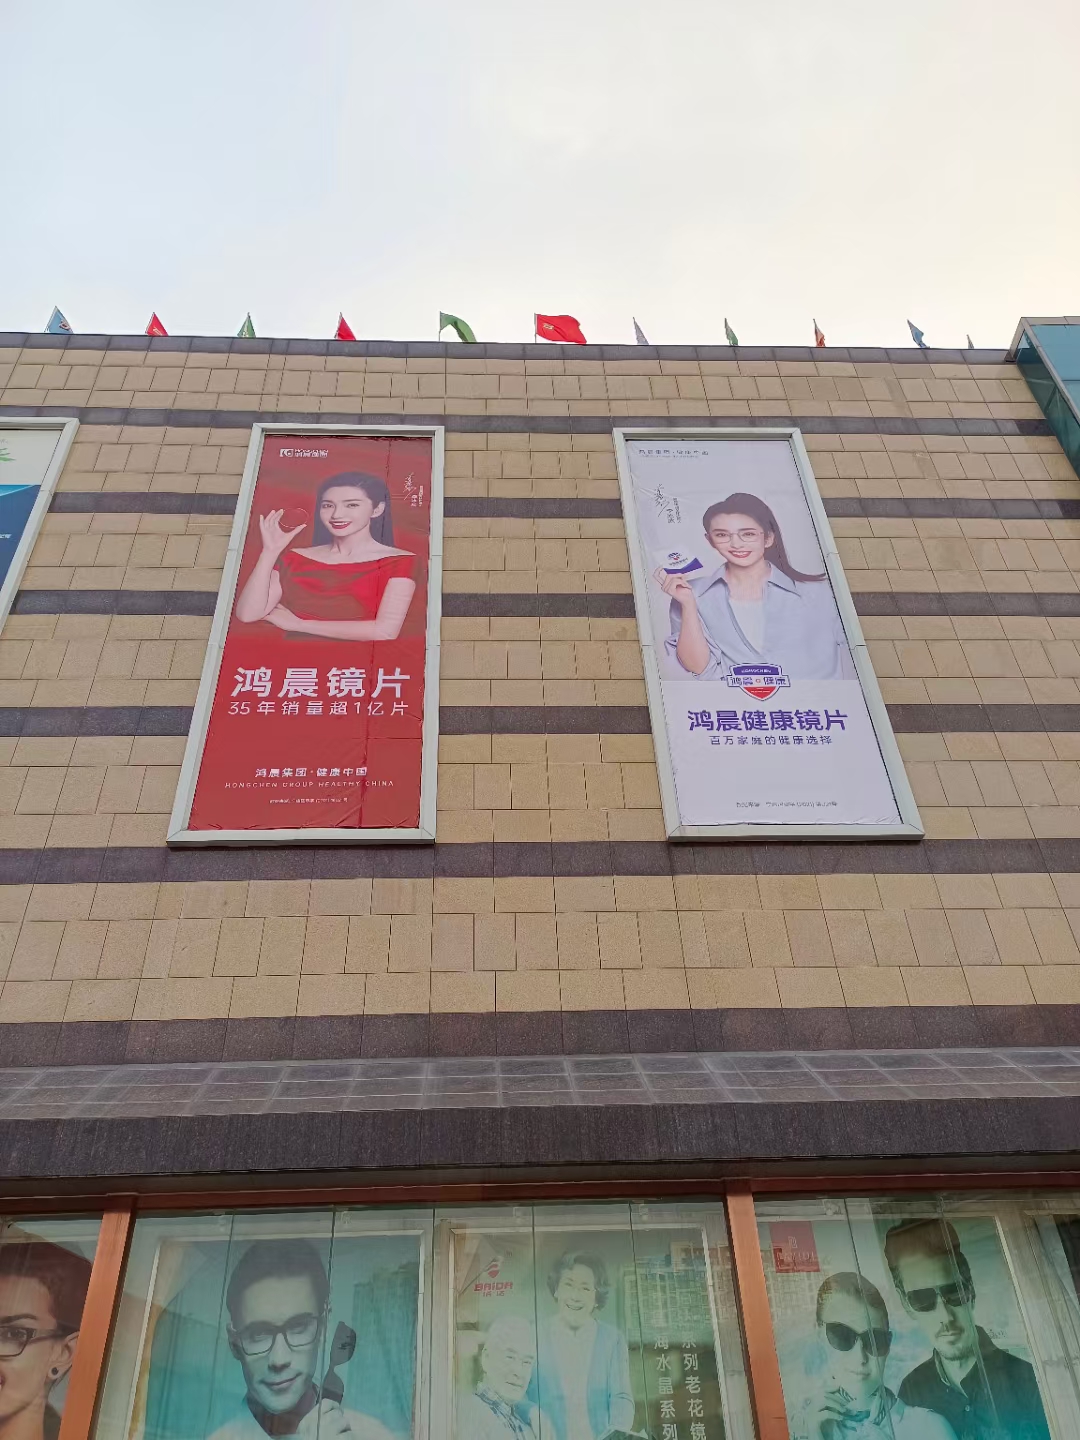 ¡Ya vamos!Nuevo anuncio en el mercado óptico de la ciudad de Zhengzhou